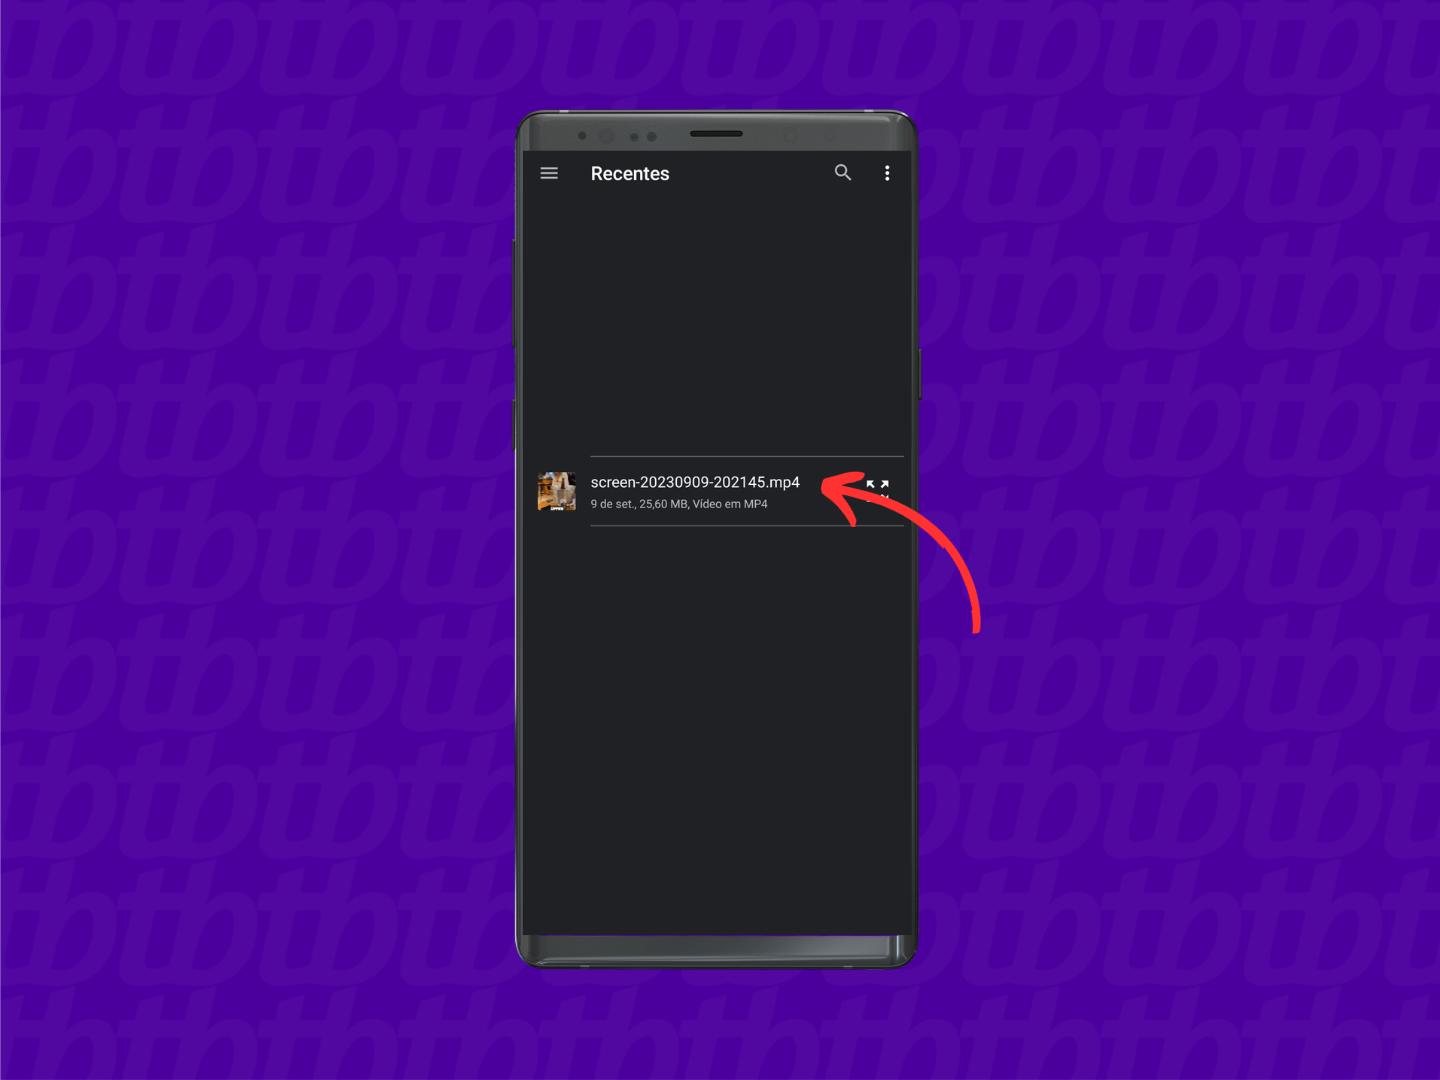 Mockup de celular Android com print de tela de uma conversa de WhatsApp. Uma seta indica o local onde se encontra o vídeo que queremos enviar pelo WhatsApp.